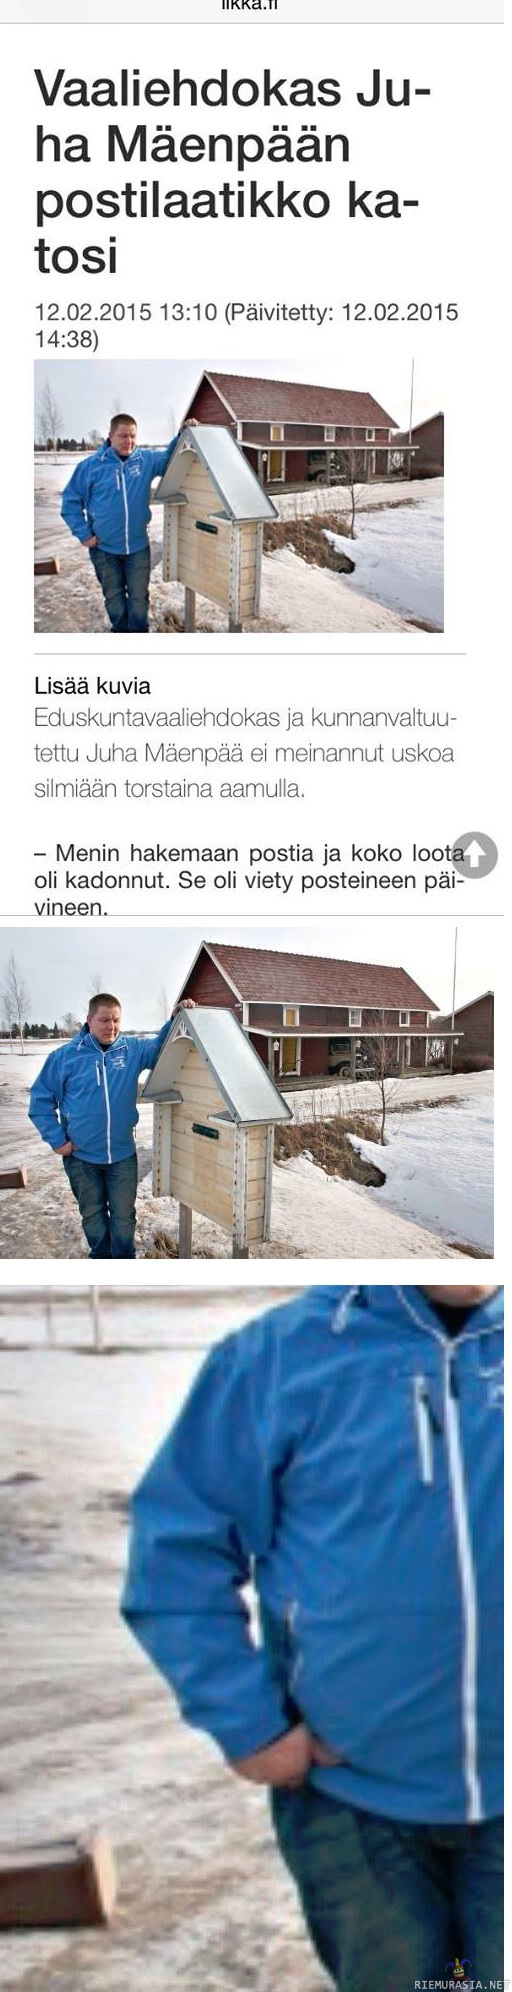 Vaaliehdokas Juha Mäenpään postilaatikko katosi - Ilkka 13.2.2015